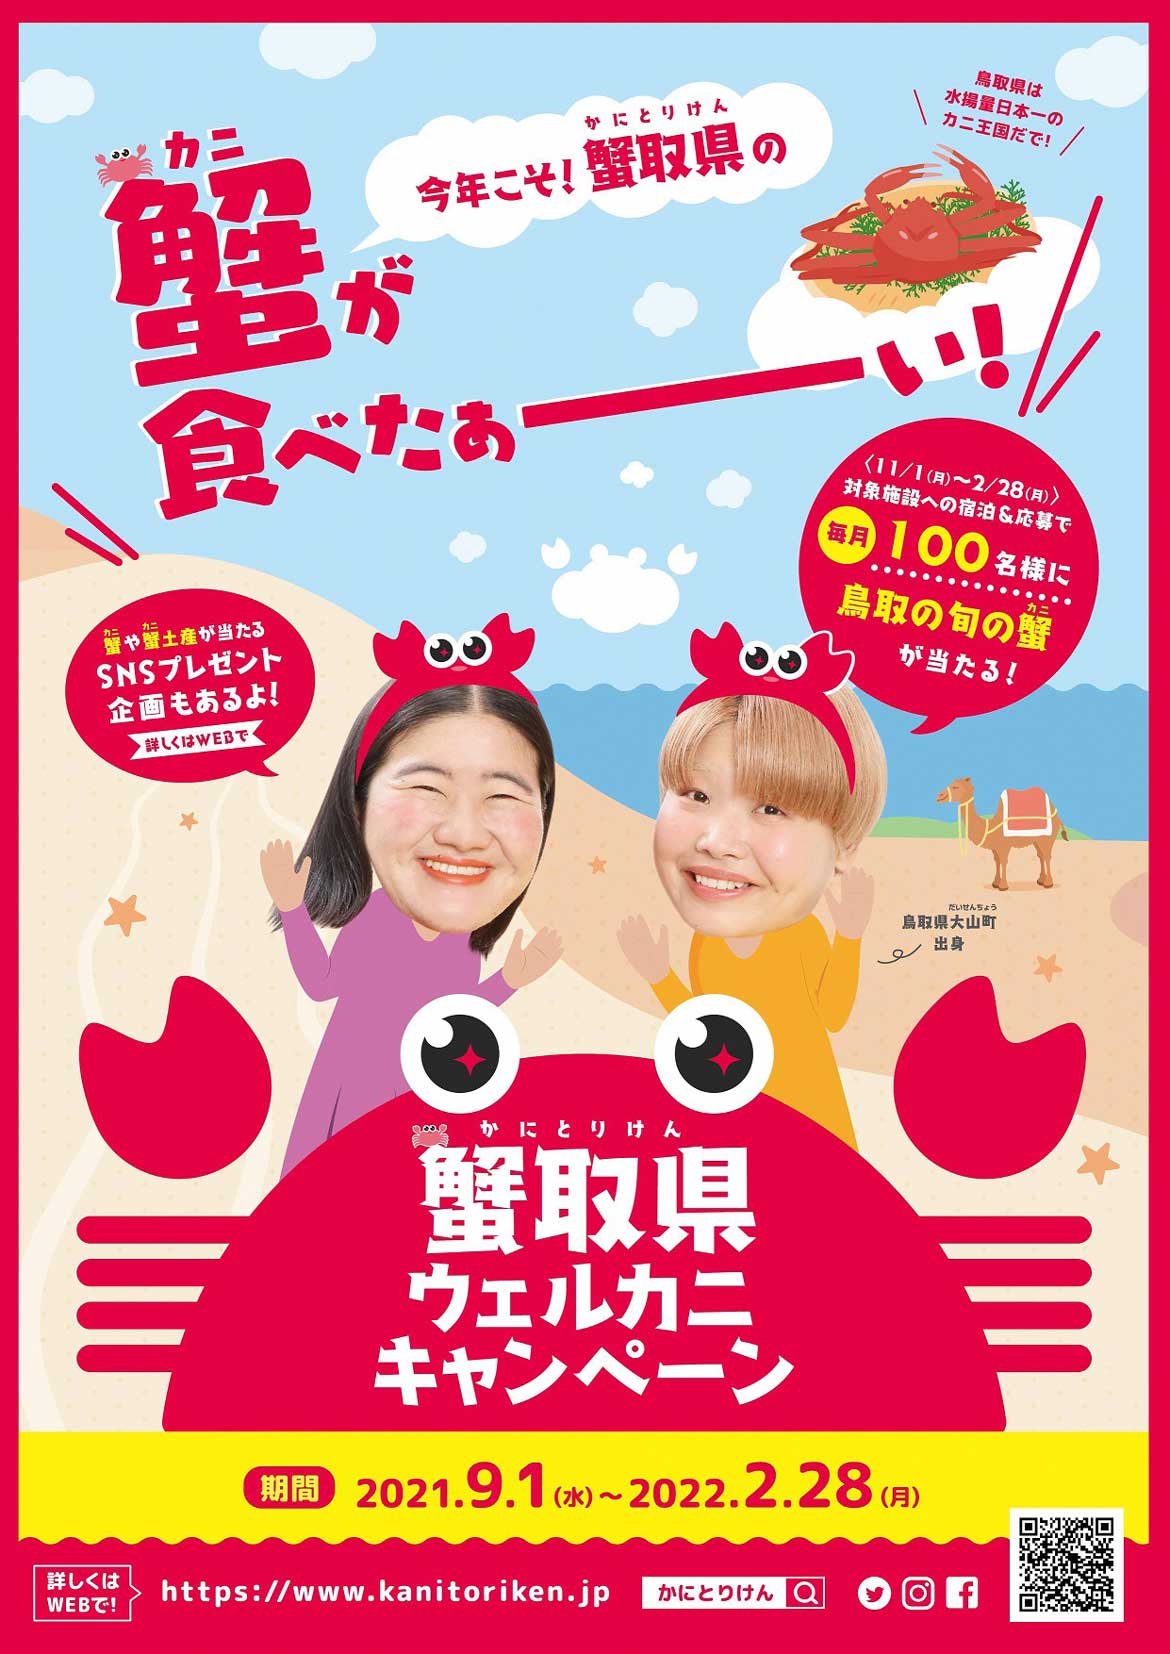 今年こそ蟹取県の蟹が食べたい！その願い叶えます！『蟹取県ウェルカニキャンペーン』開催